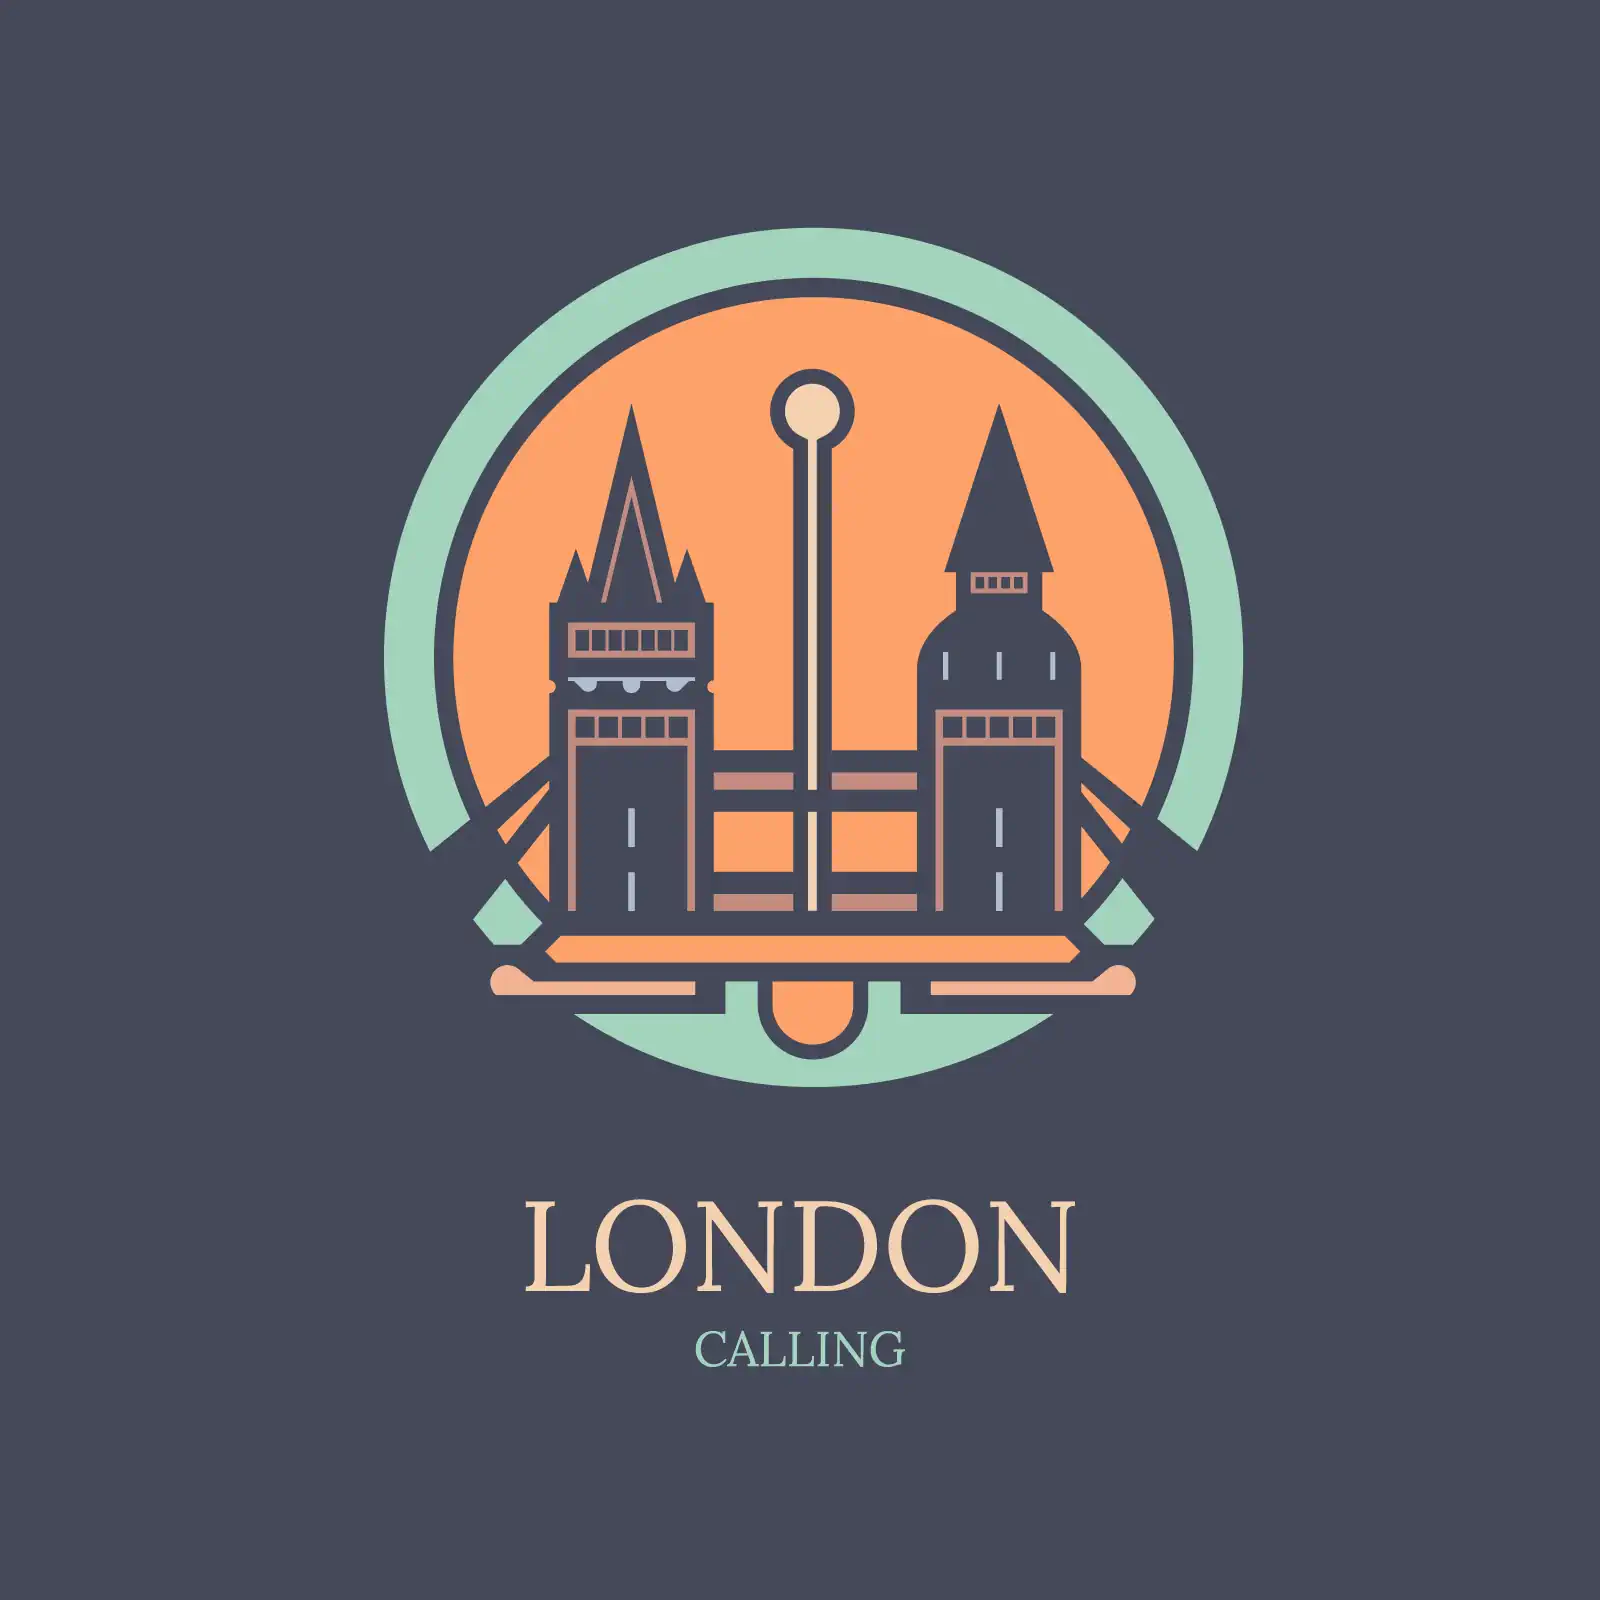 London calling logo